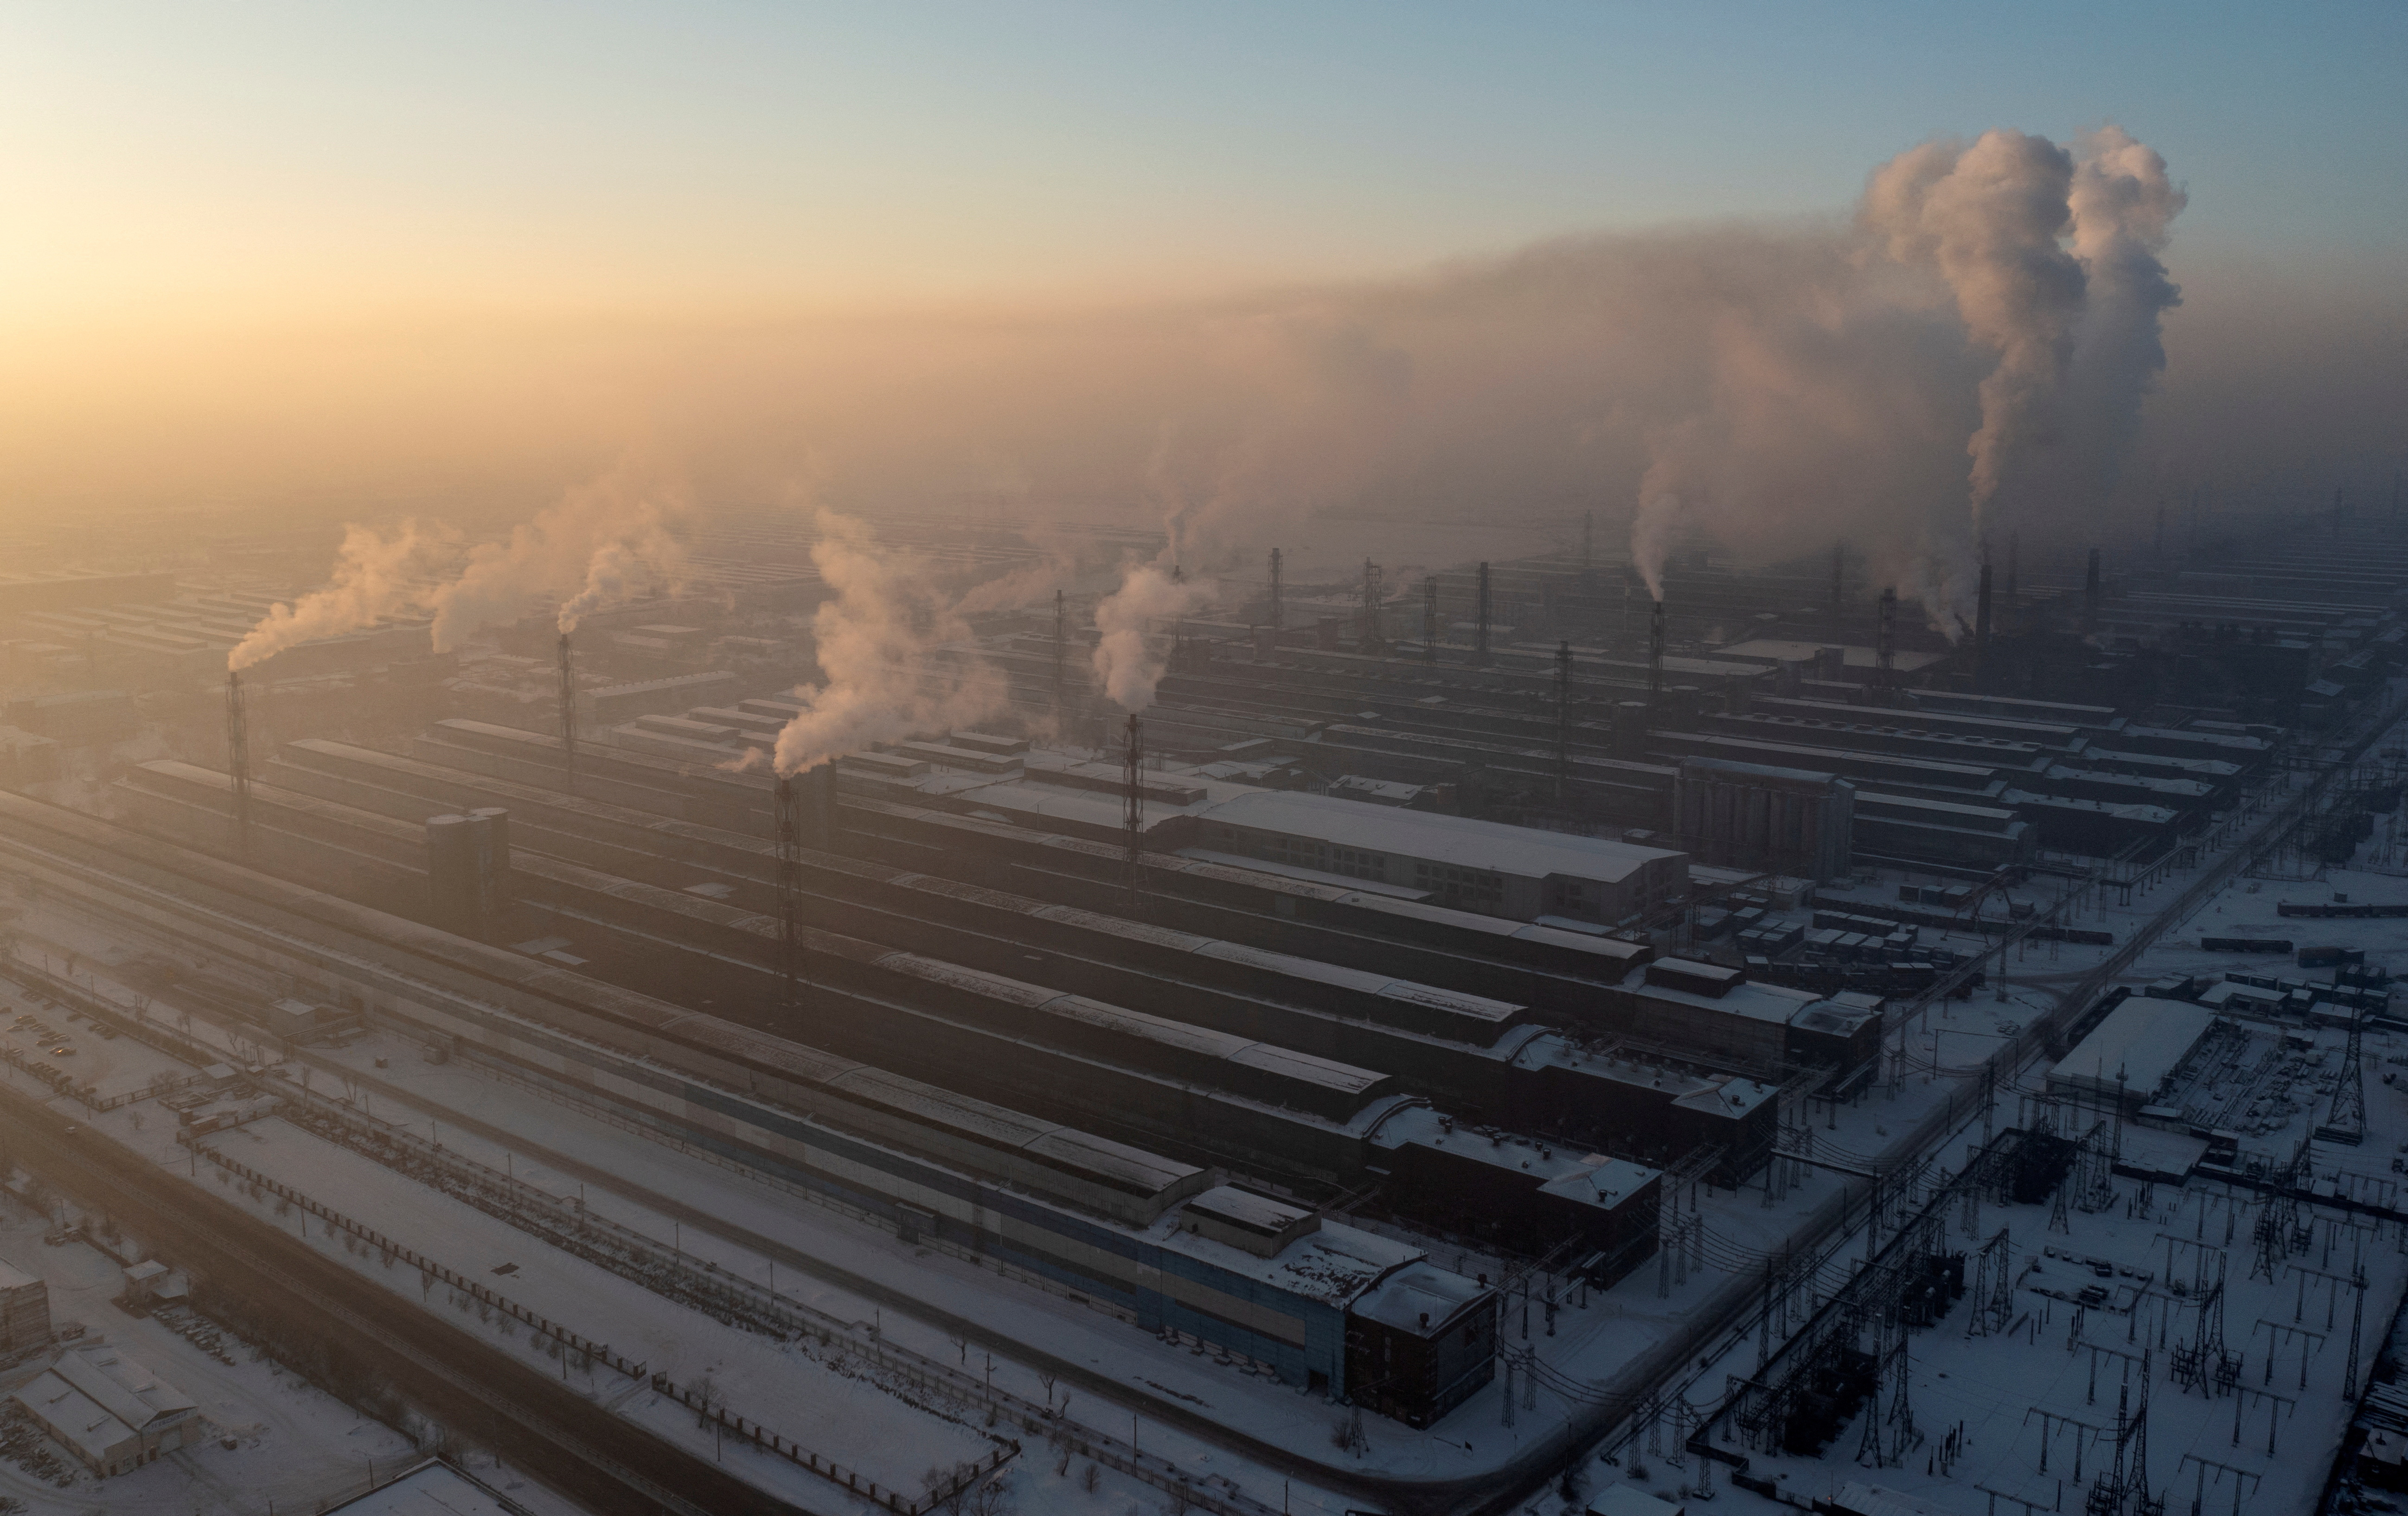 A view shows Rusal aluminium smelter in Krasnoyarsk